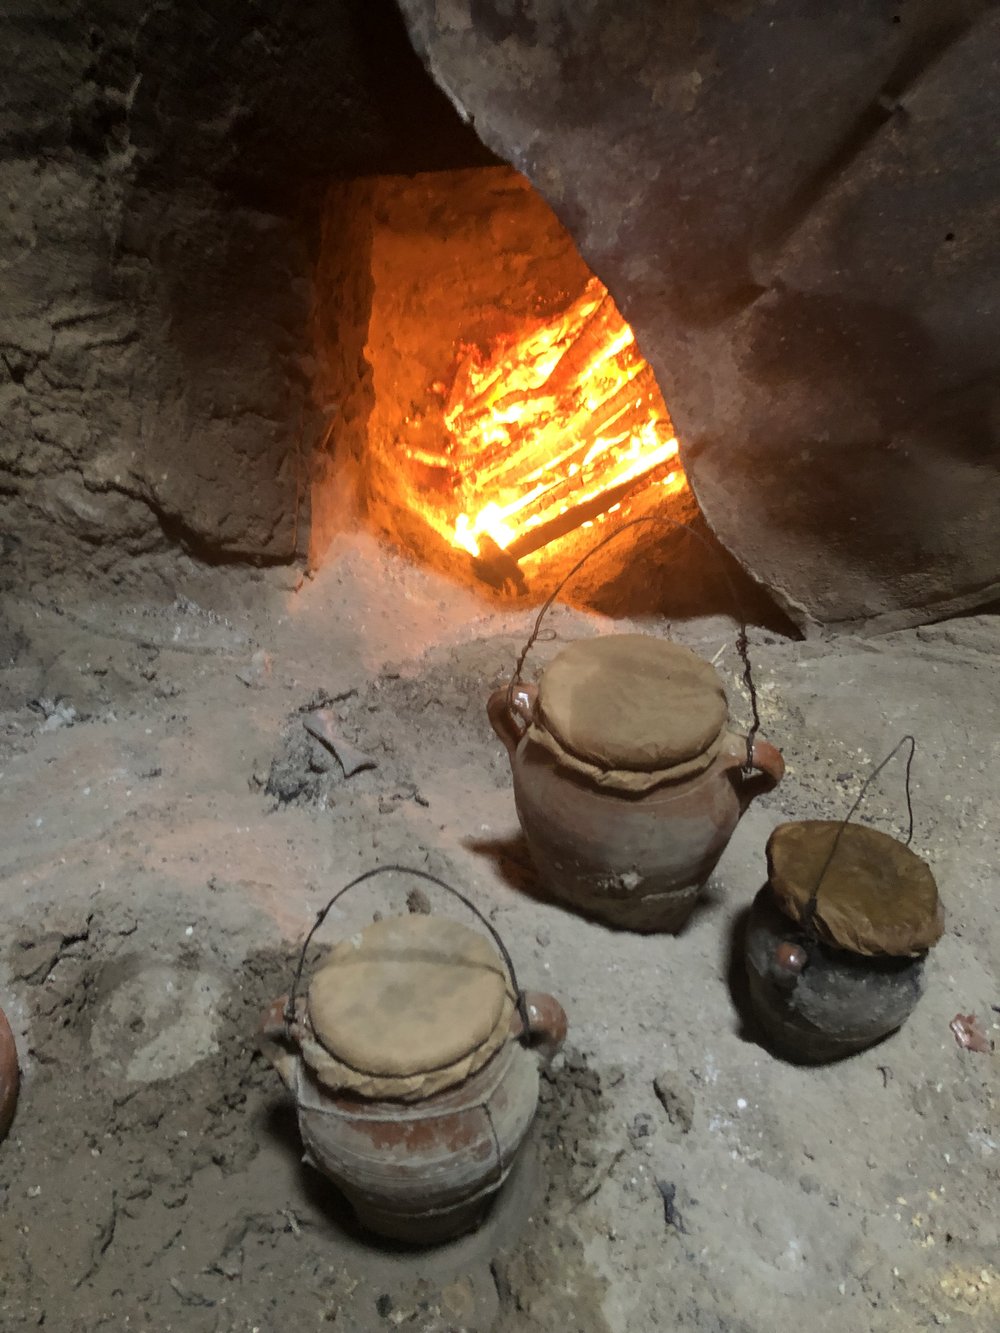 Tangias cooking at local Hammam